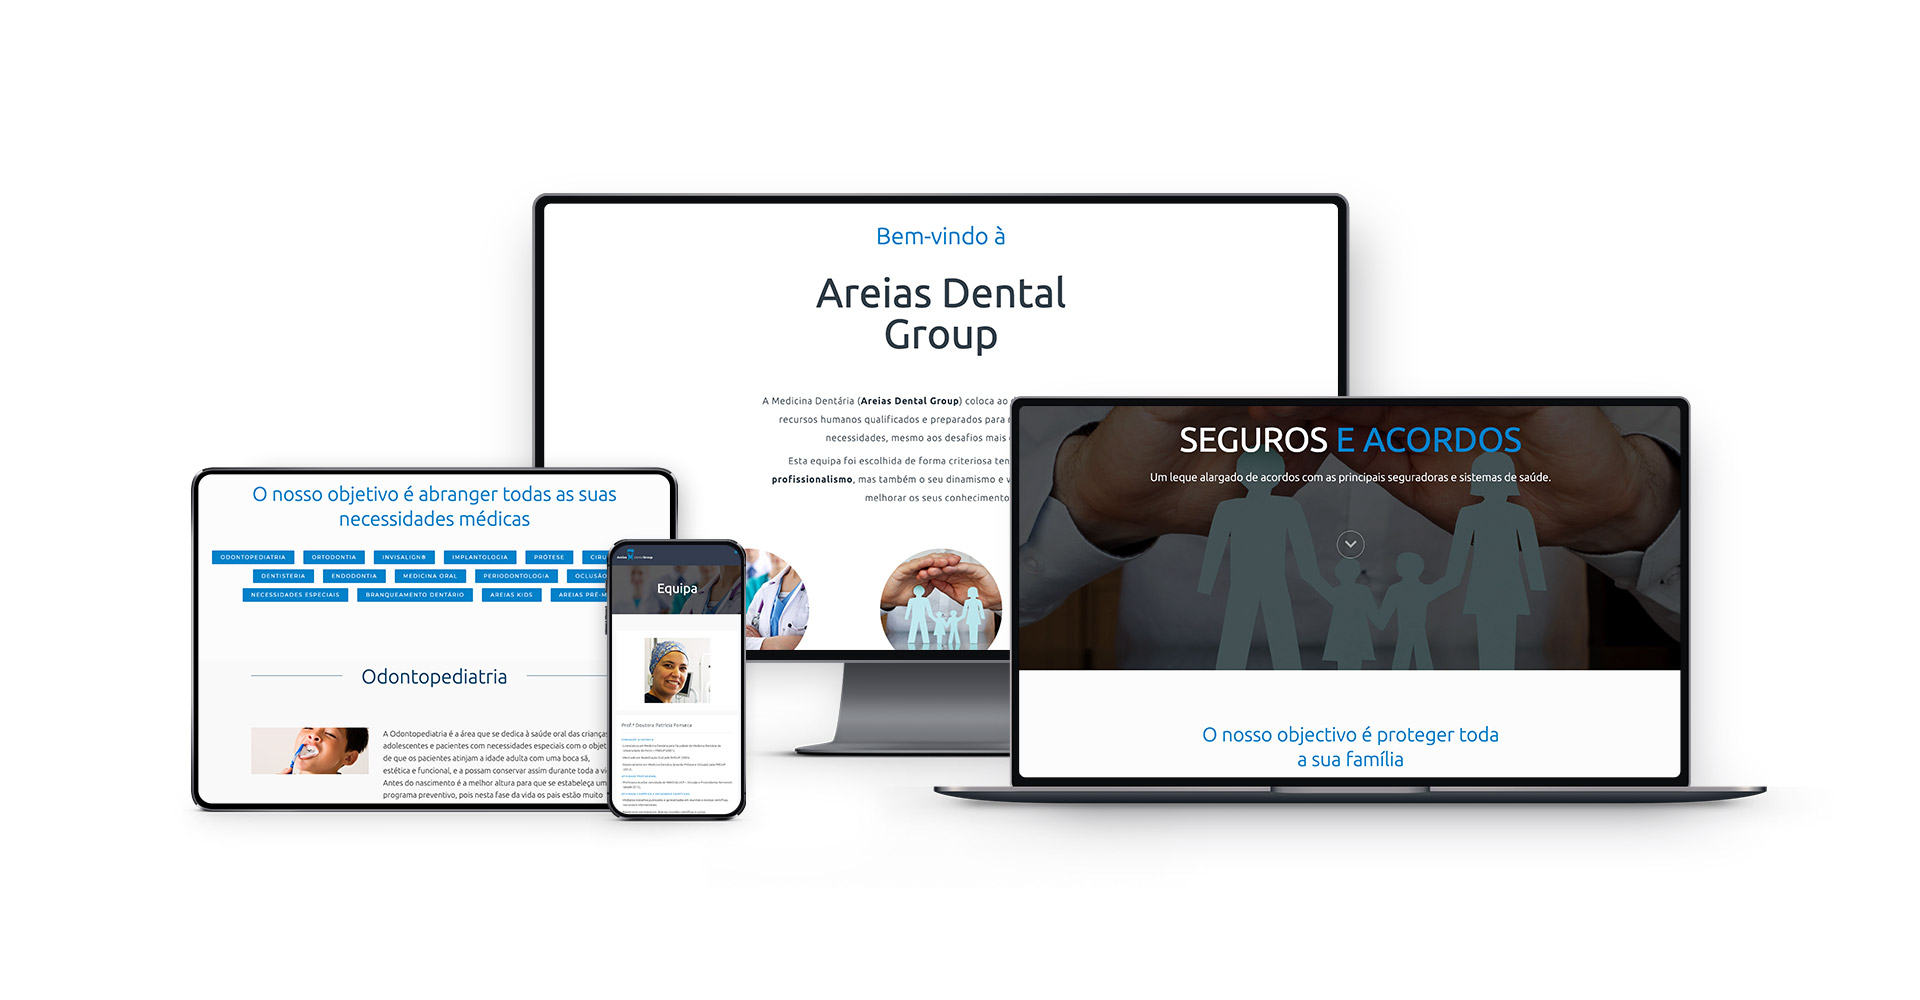 Clinica Areias Dental Group website